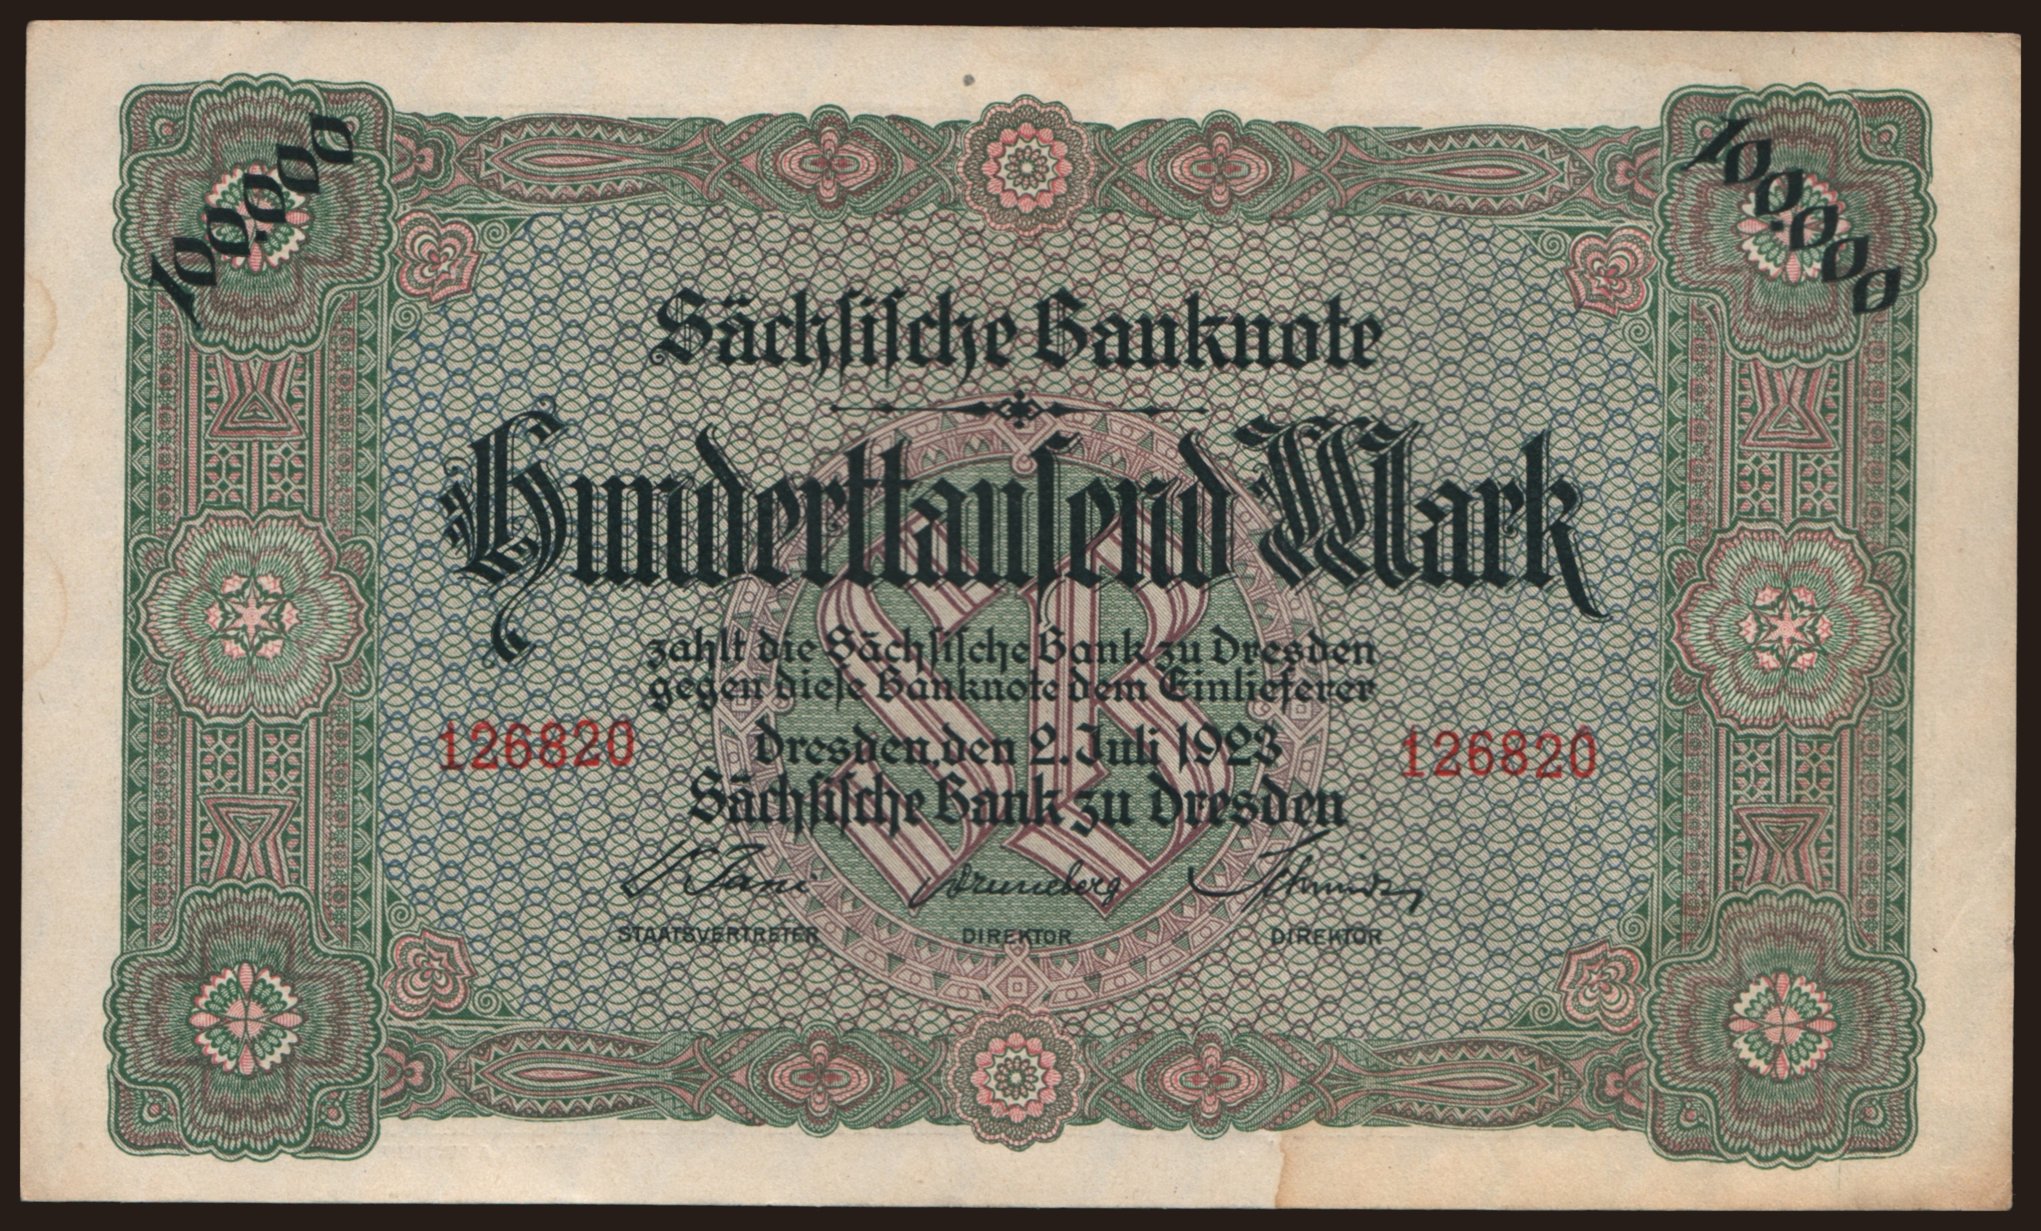 Sächsische Bank zu Dresden, 100.000 Mark, 1923